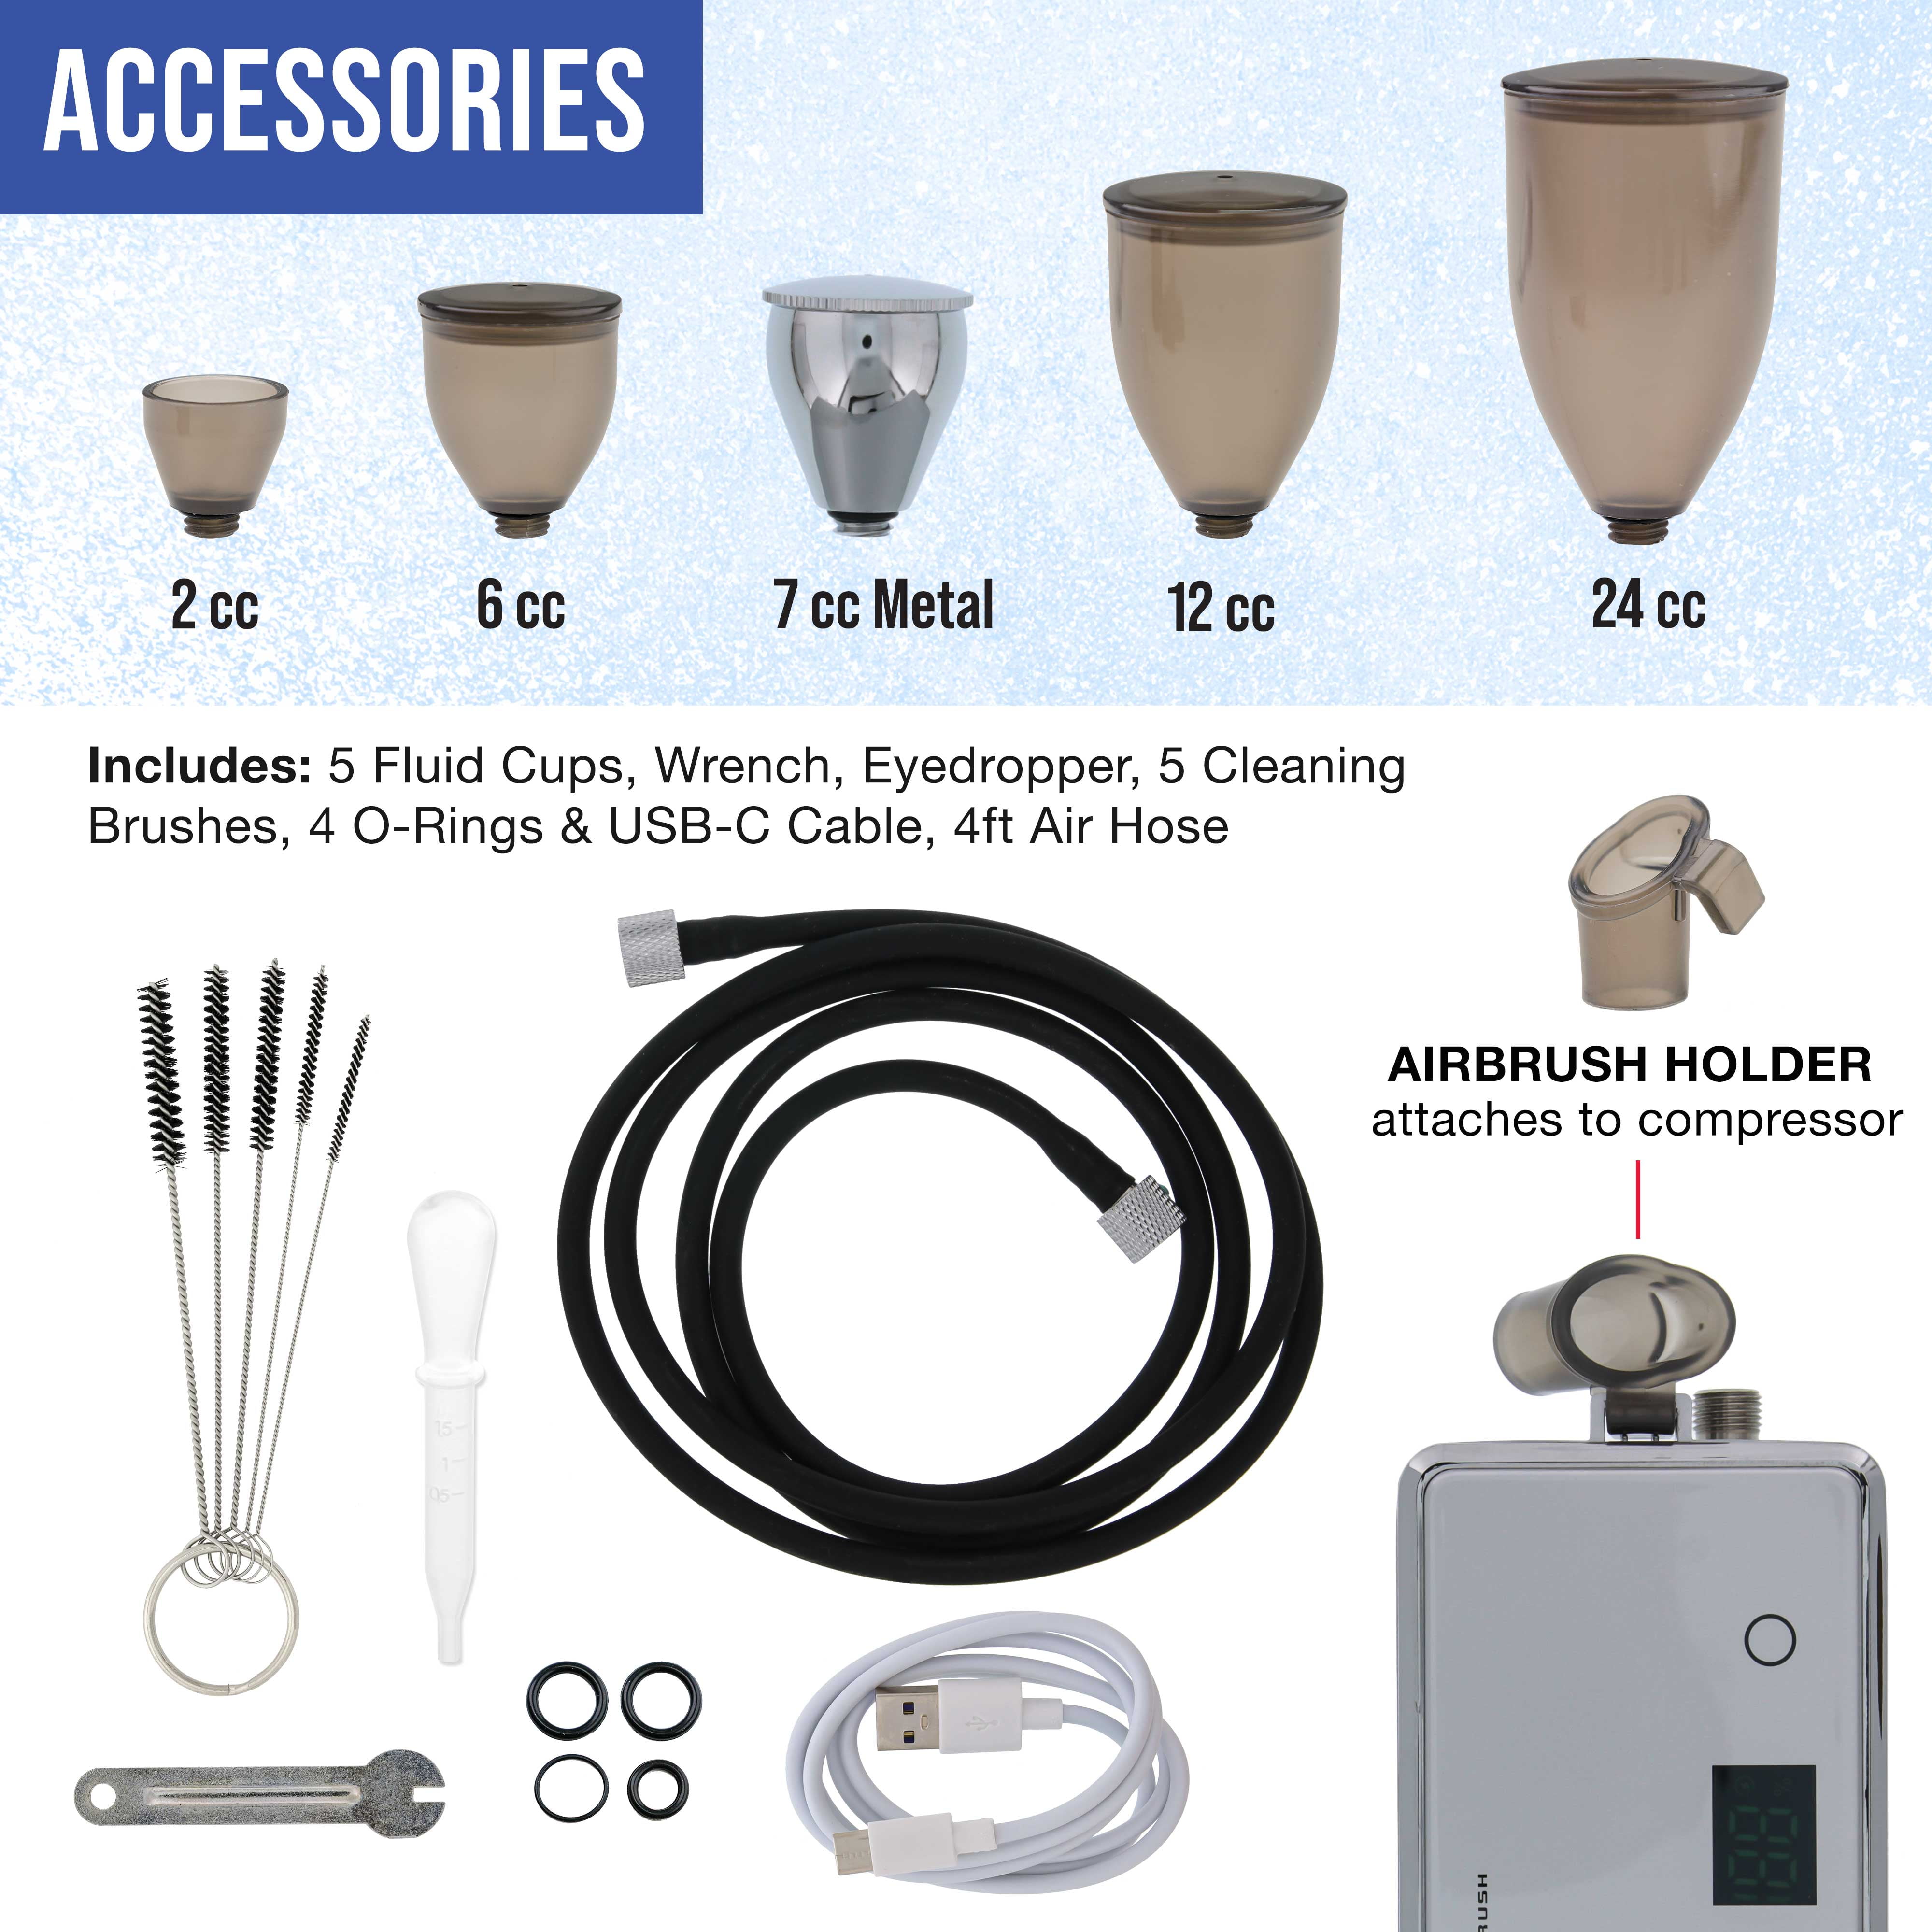 Cordless Airbrush kit – BACOENG